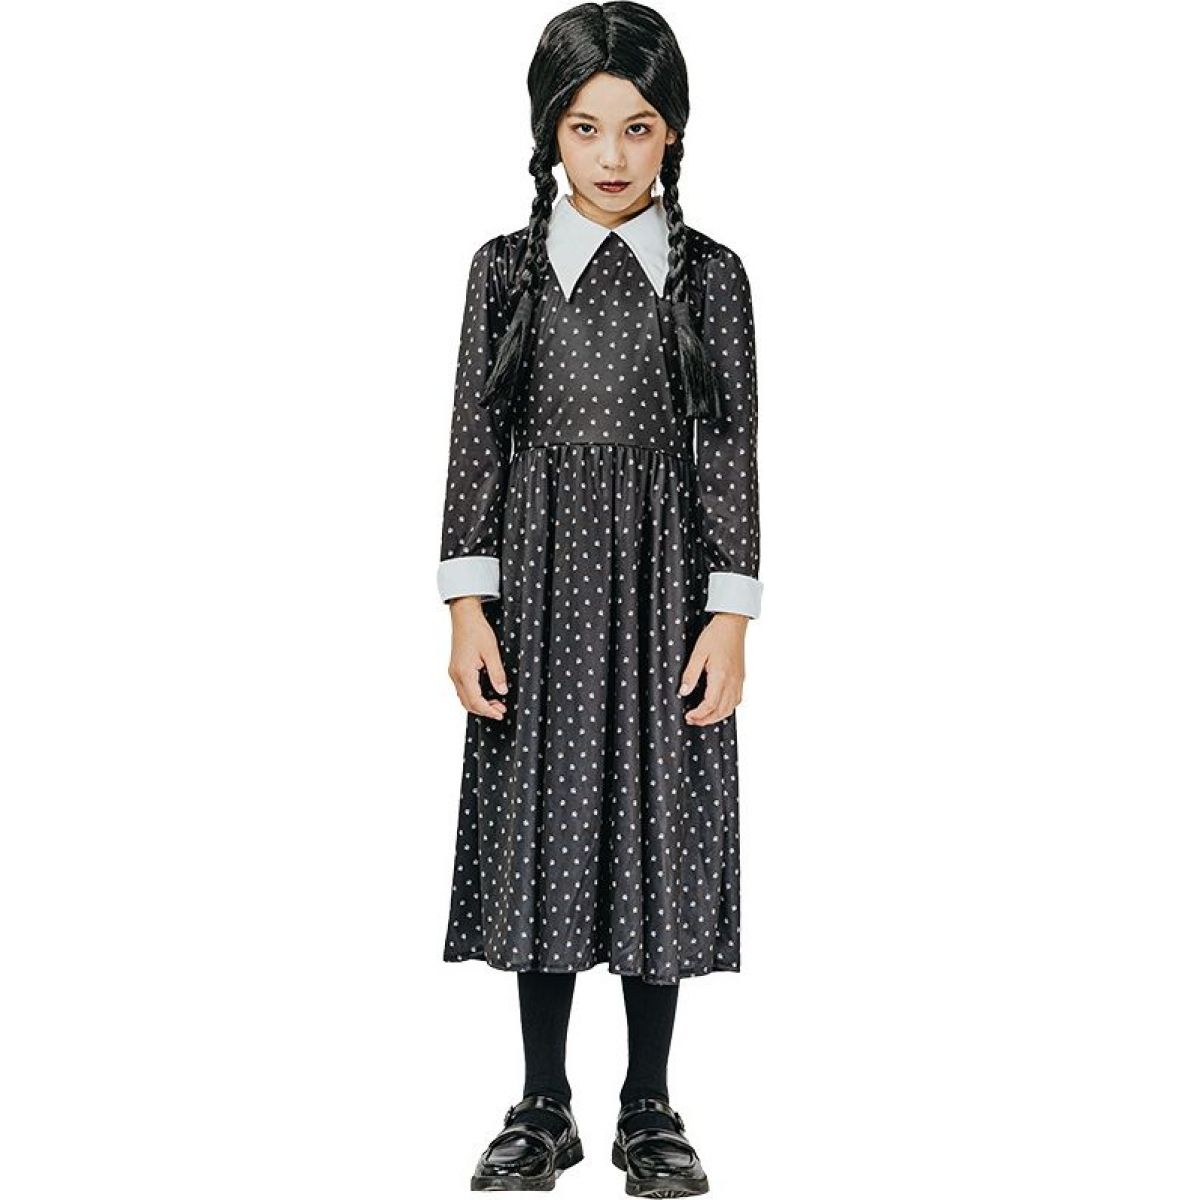 Made Šaty na karneval gotické dievča 110 - 120 cm